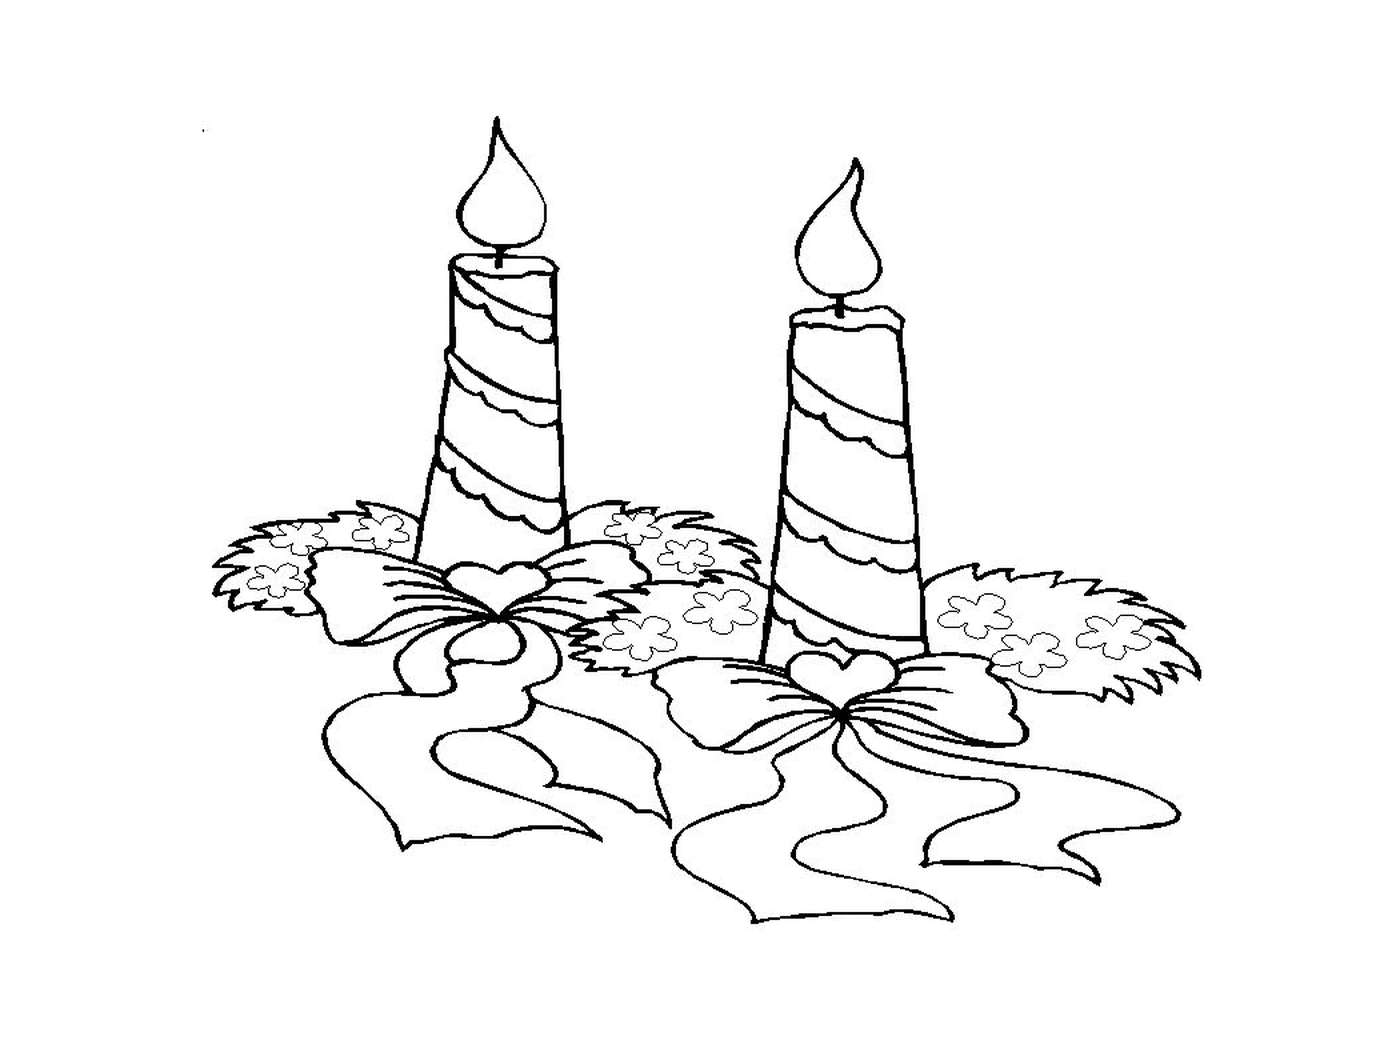  Две зажженные свечи, помещаемые на пол 